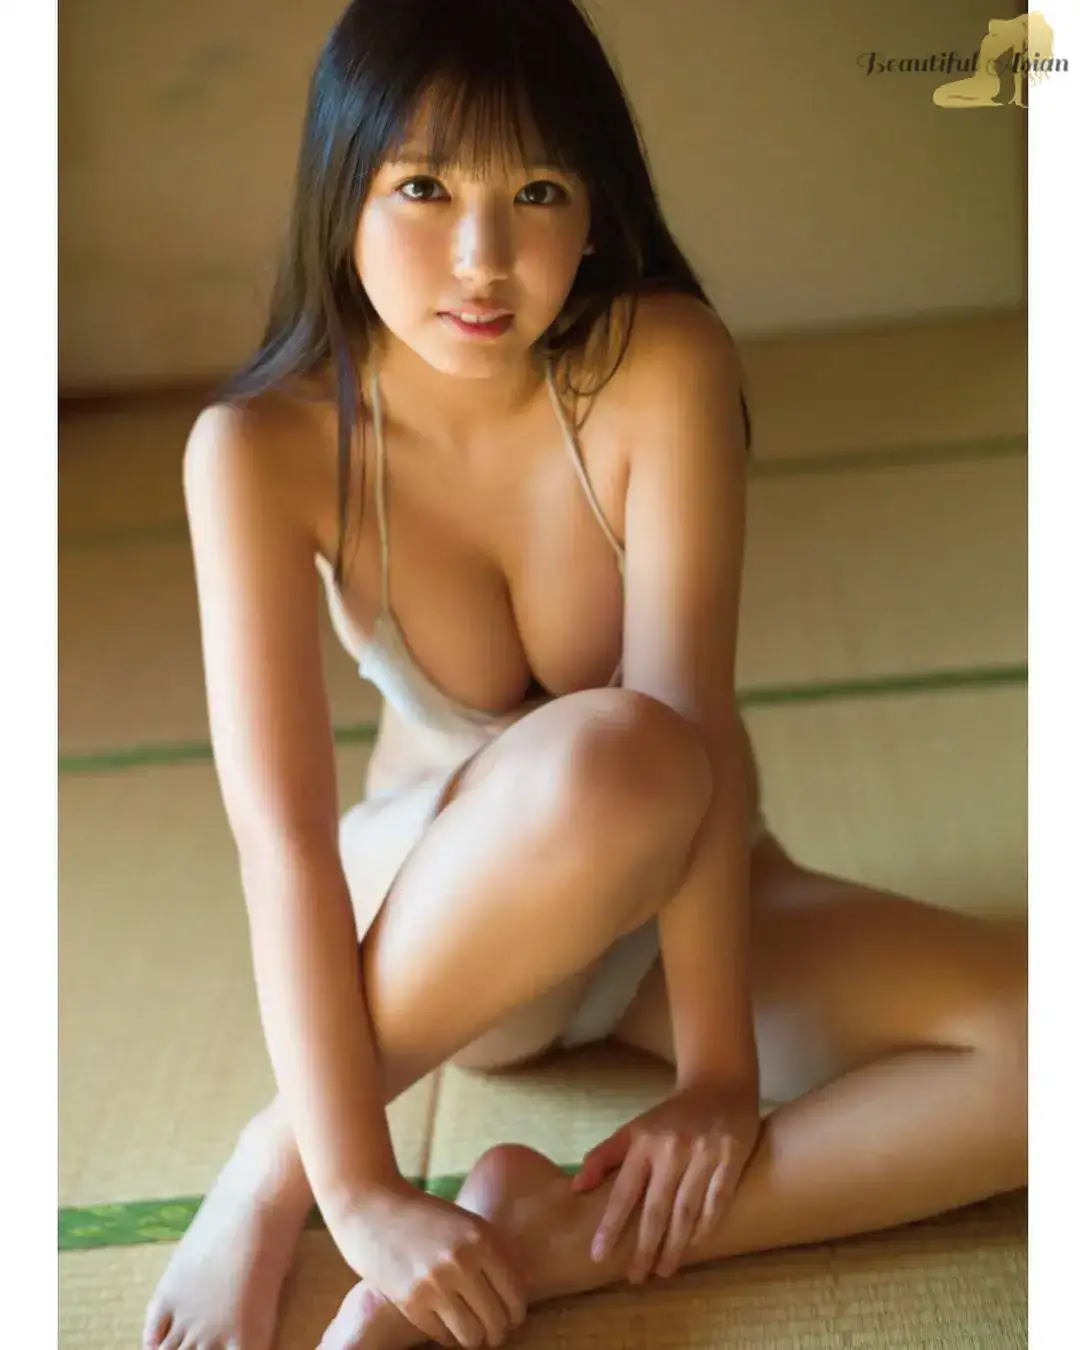 mesmerizing Japanese woman image